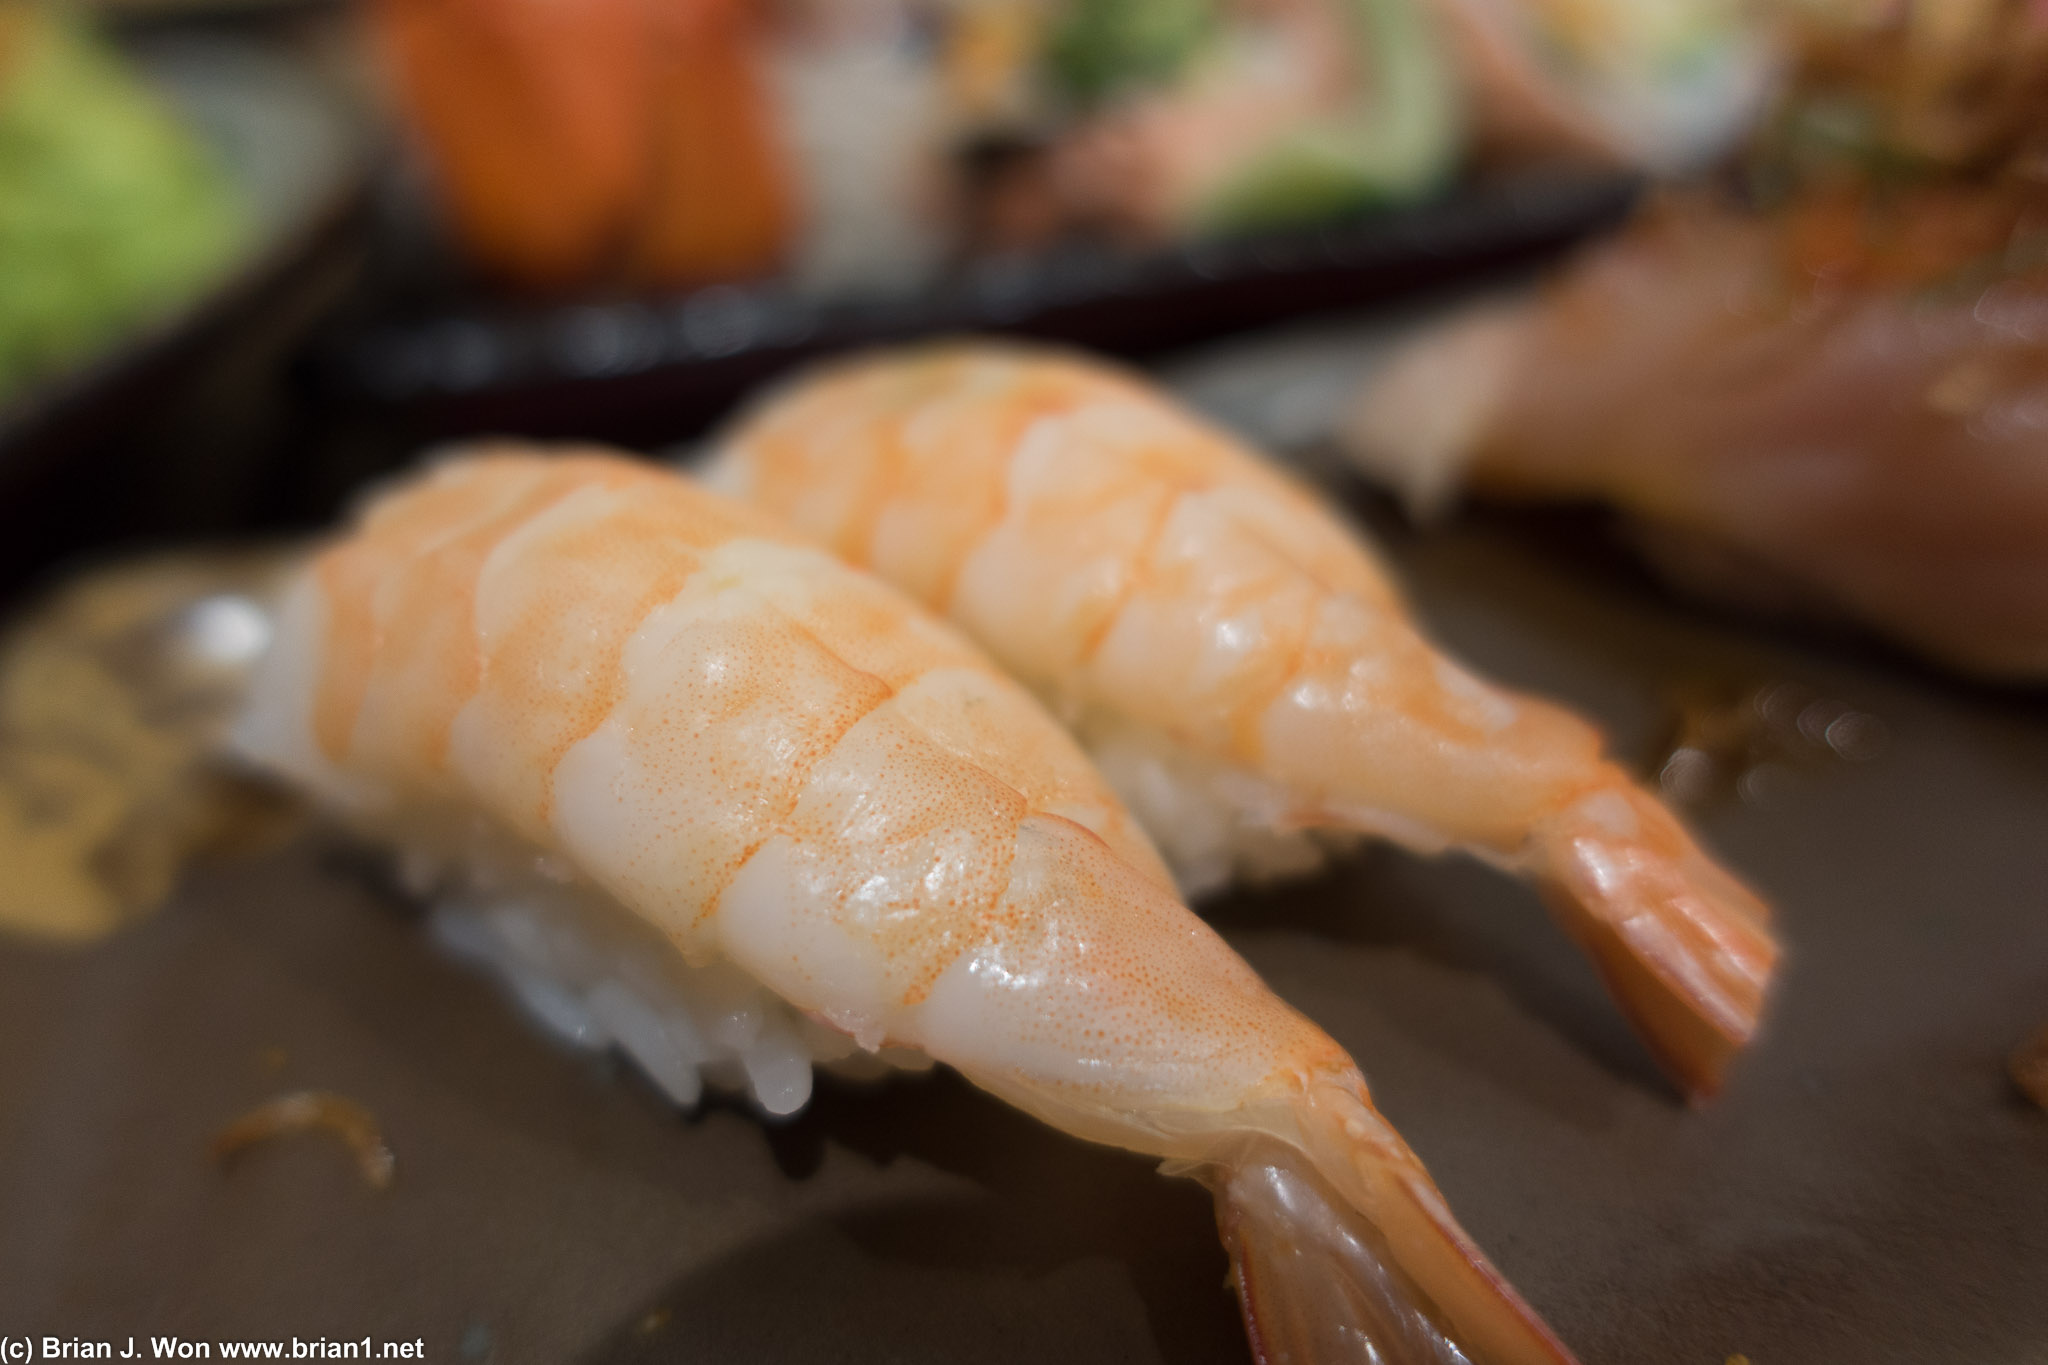 Shrimp. Quite ordinary.